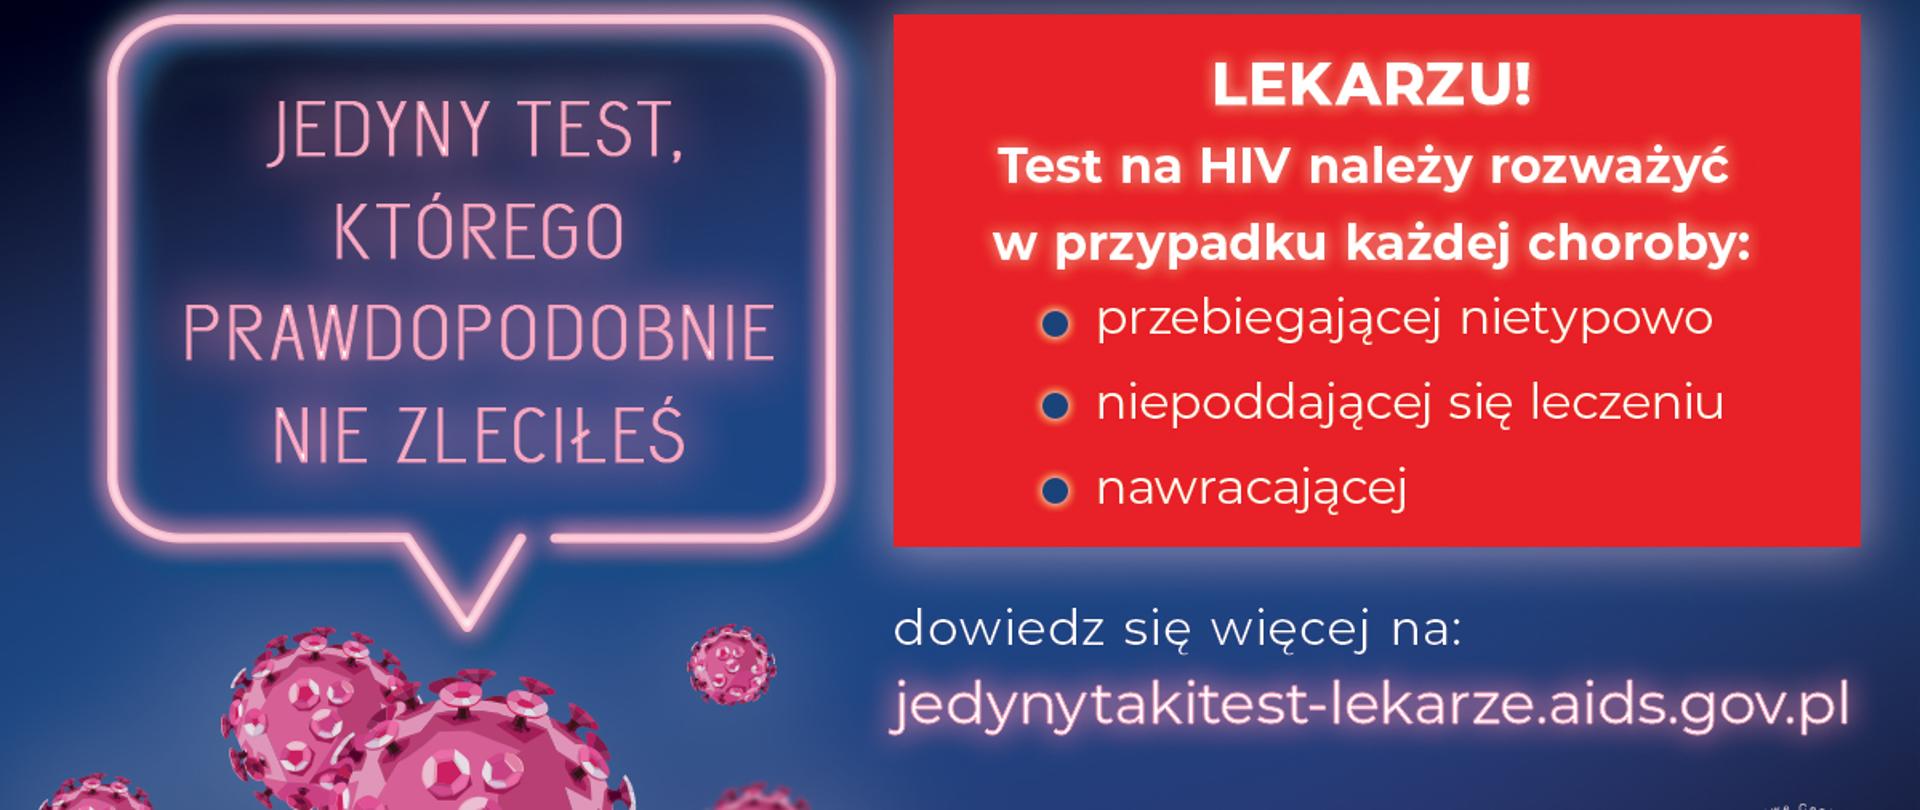 infografika kolorowa na fioletowym tle różowy napis Jedyny test, którego prawdopodobnie nie zleciłeś pod napisem wirusy w prawym rogu na czerwonym tle wskazówki dla lekarza, w prawym dolnym rogu logo Krajowego centrum ds AIDS i Ministerstwa Zdrowia